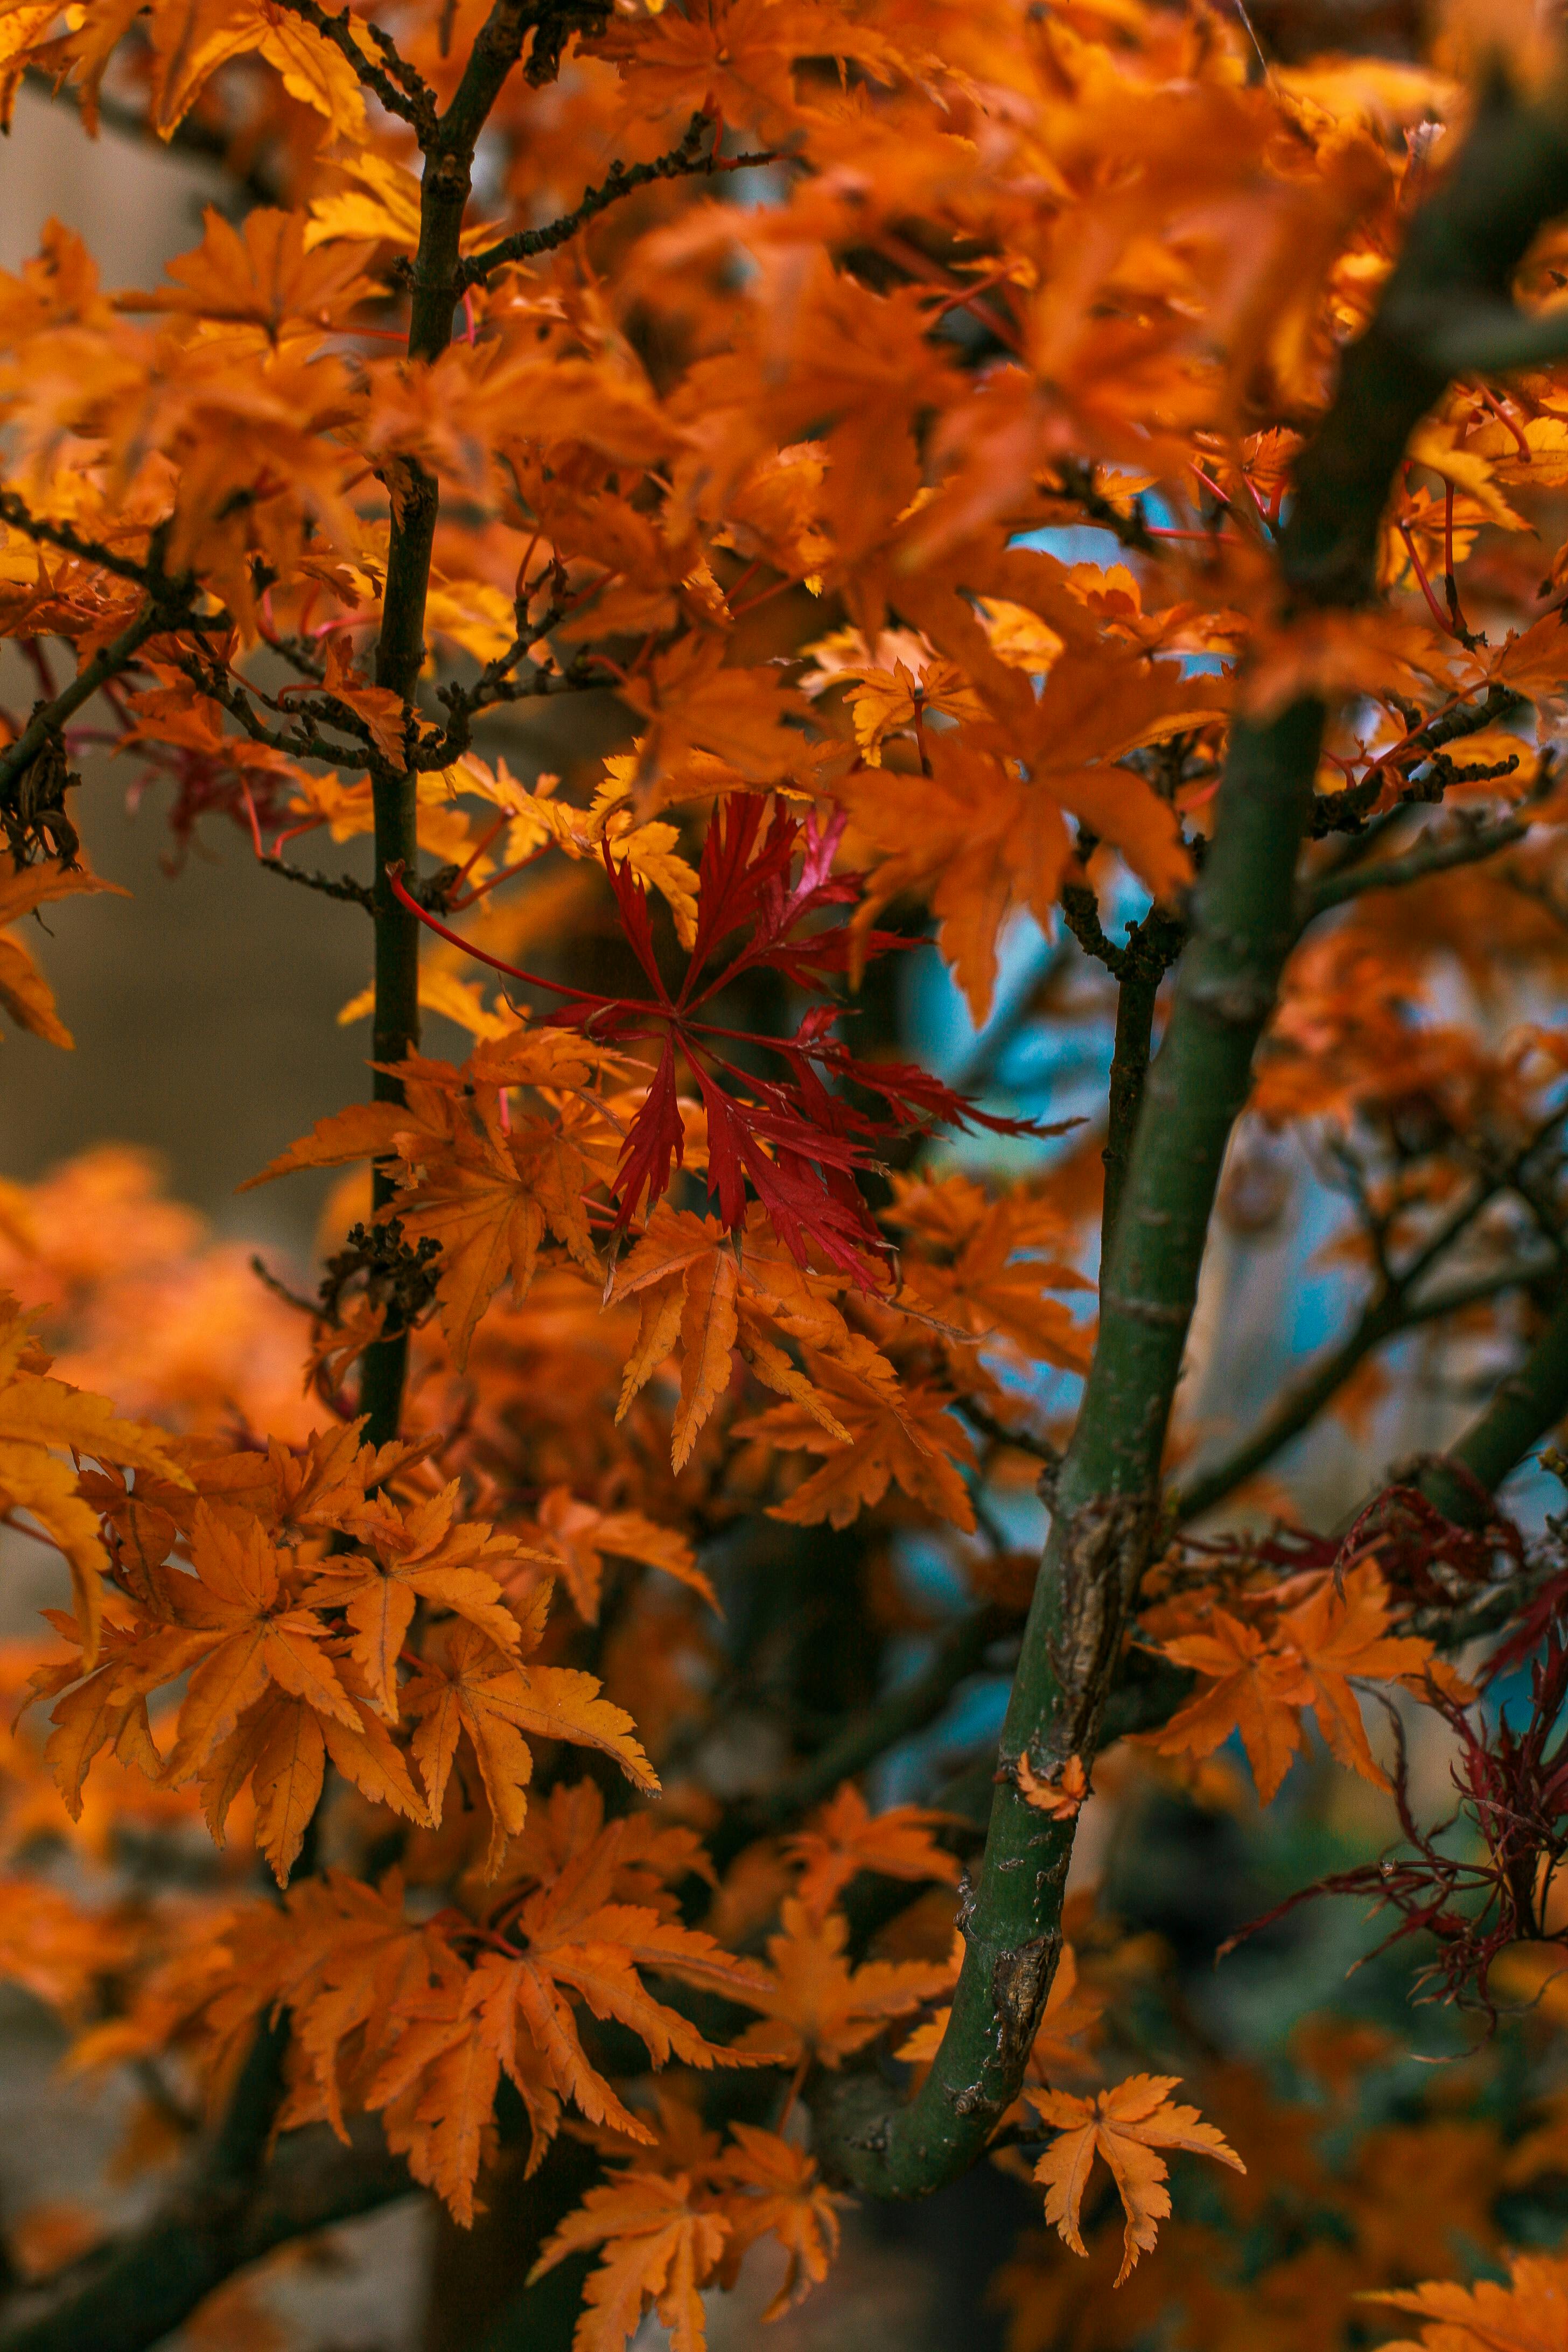 Cùng tham gia chuyến phiêu lưu đến với những cây có lá cam đầy quyến rũ trong mùa thu. Trải nghiệm những khoảnh khắc đẹp tuyệt vời của mùa thu và bung lụa cùng cây lá cam.